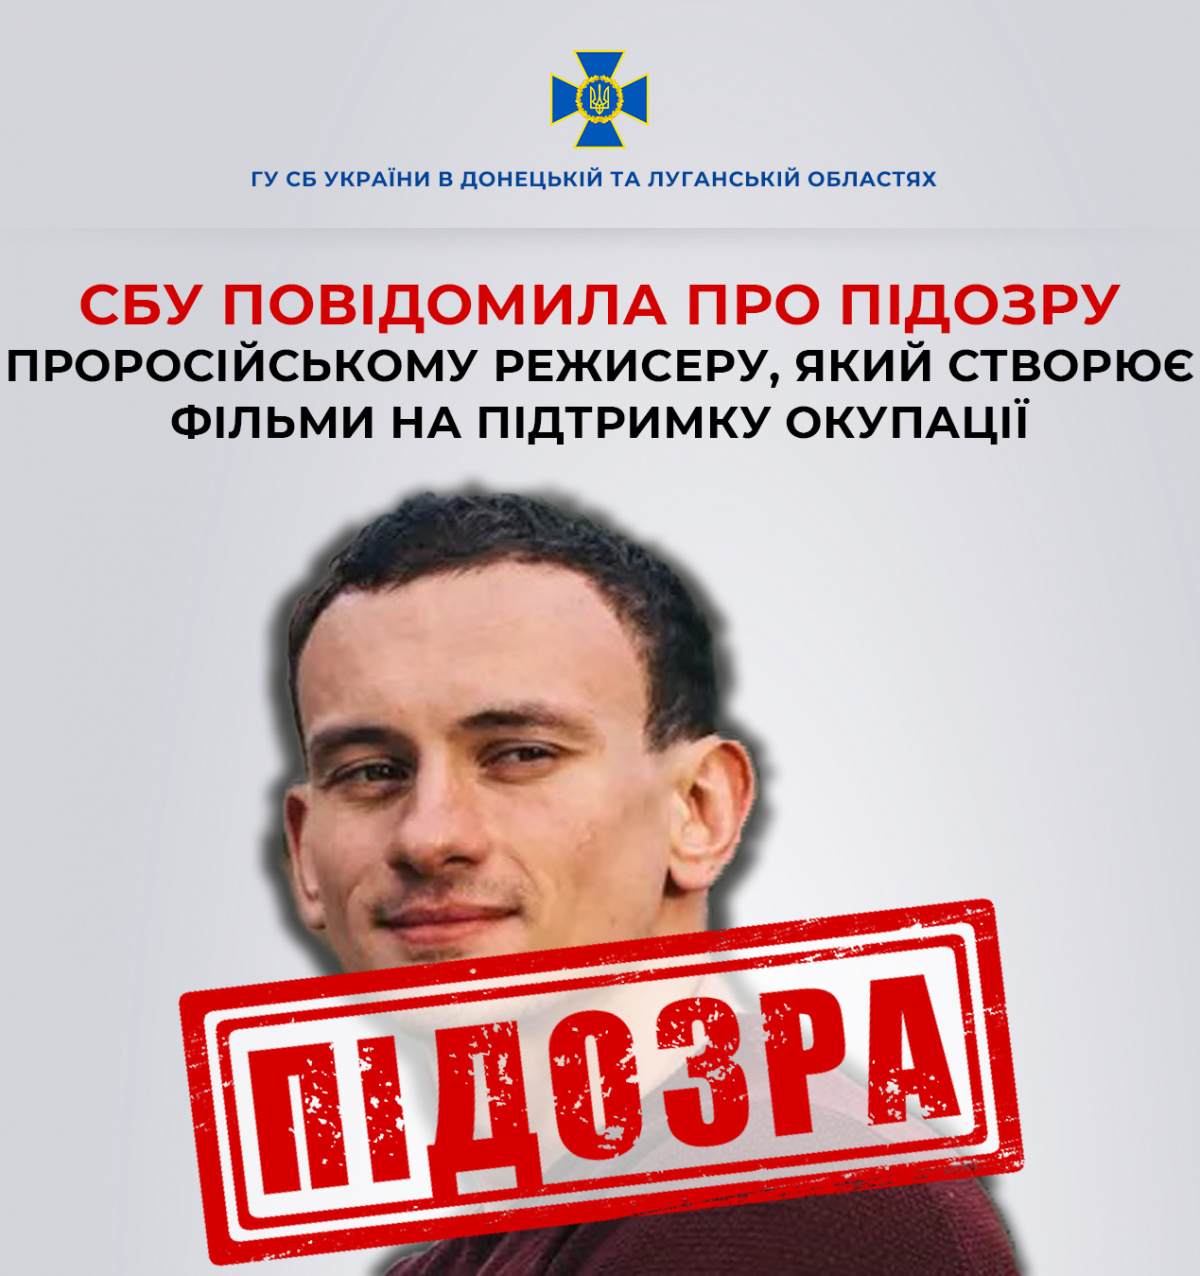 СБУ сообщила о подозрении пропагандисту из Донецка Владимиру Аграновичу. Фото: СБУ